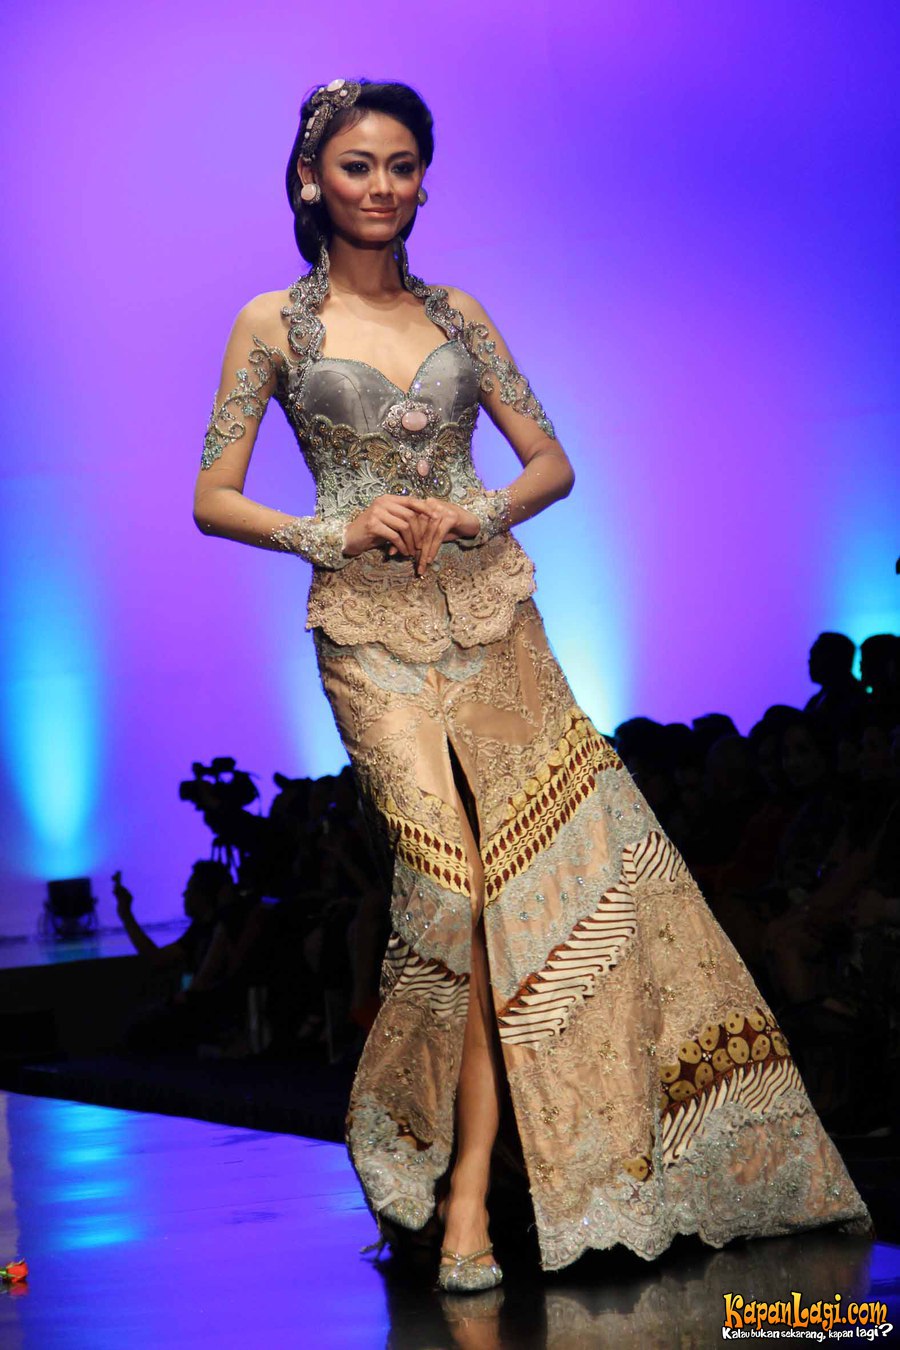  Model  Kebaya  Batik Anne Avantie Terbaru 4 Gambar Pengantin 